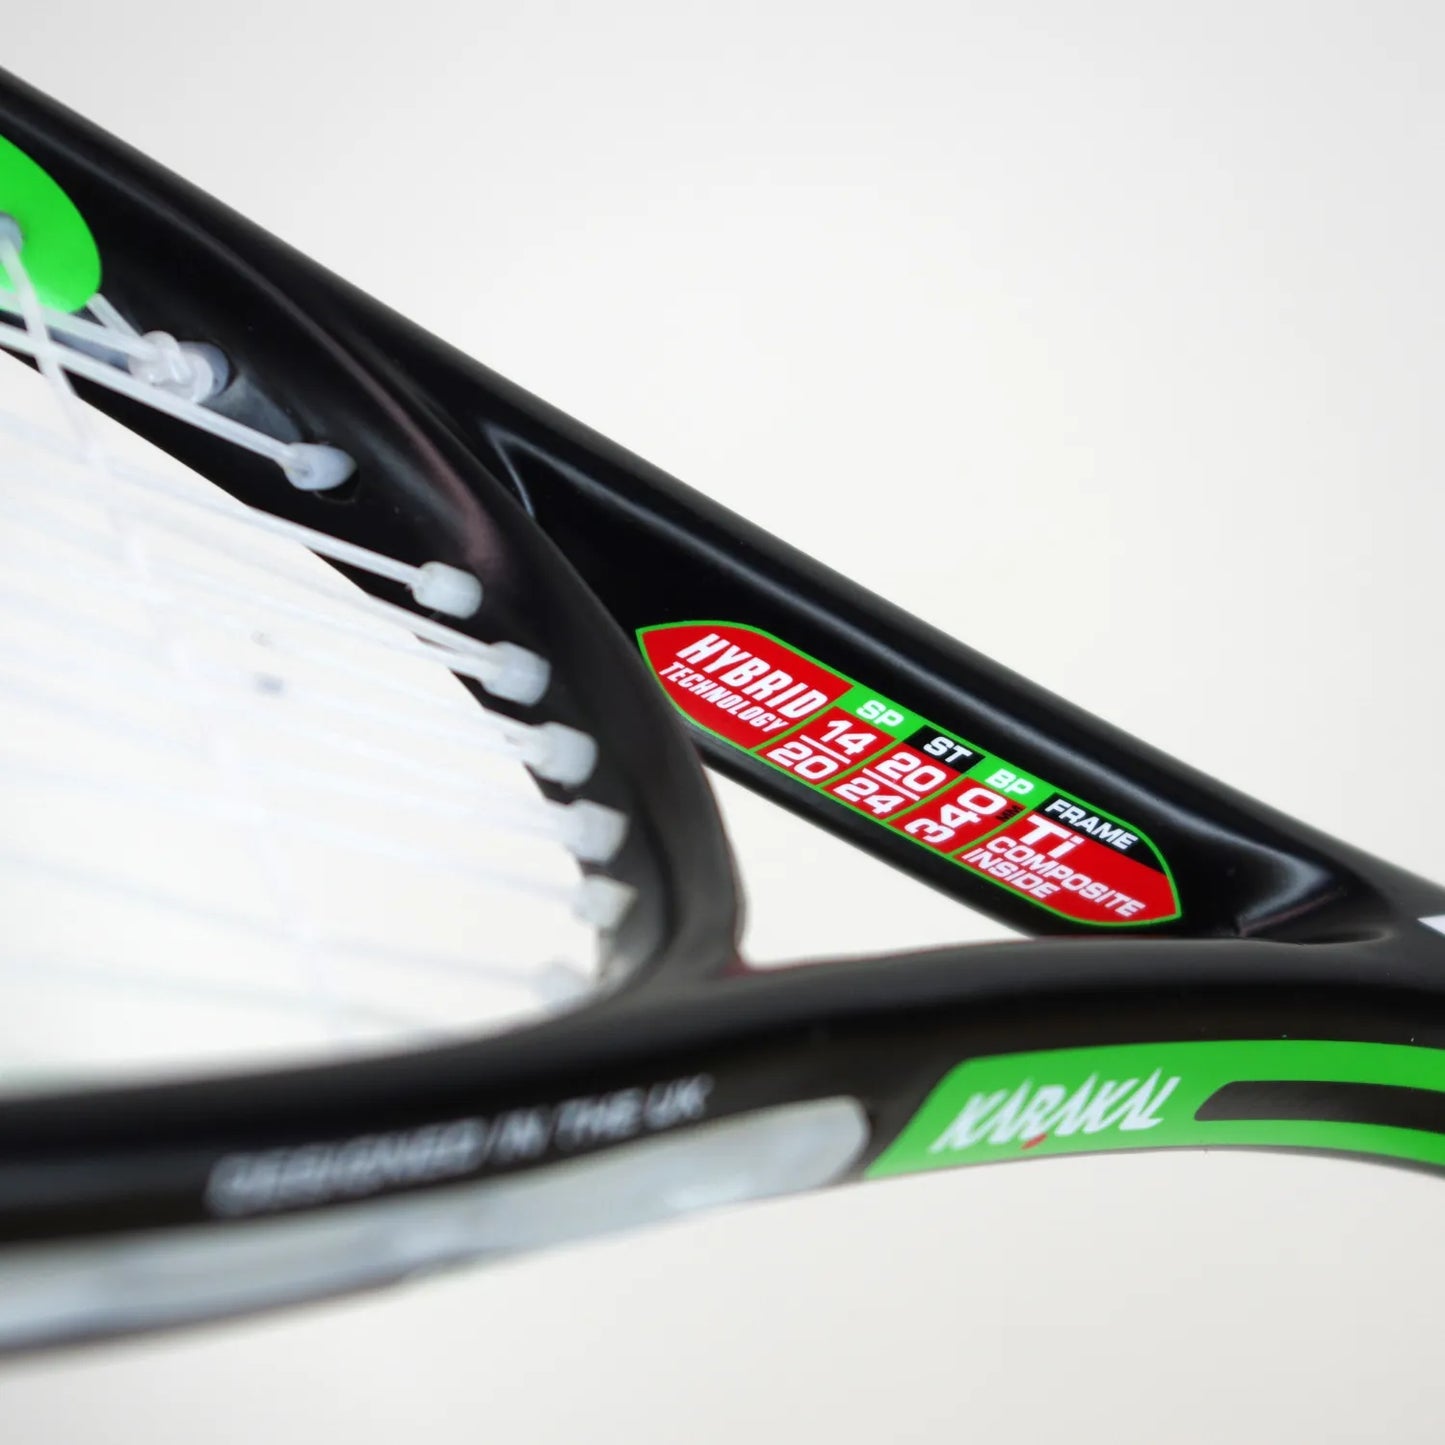 Karakal Pro Hybrid Squash Racket – Karakal.com